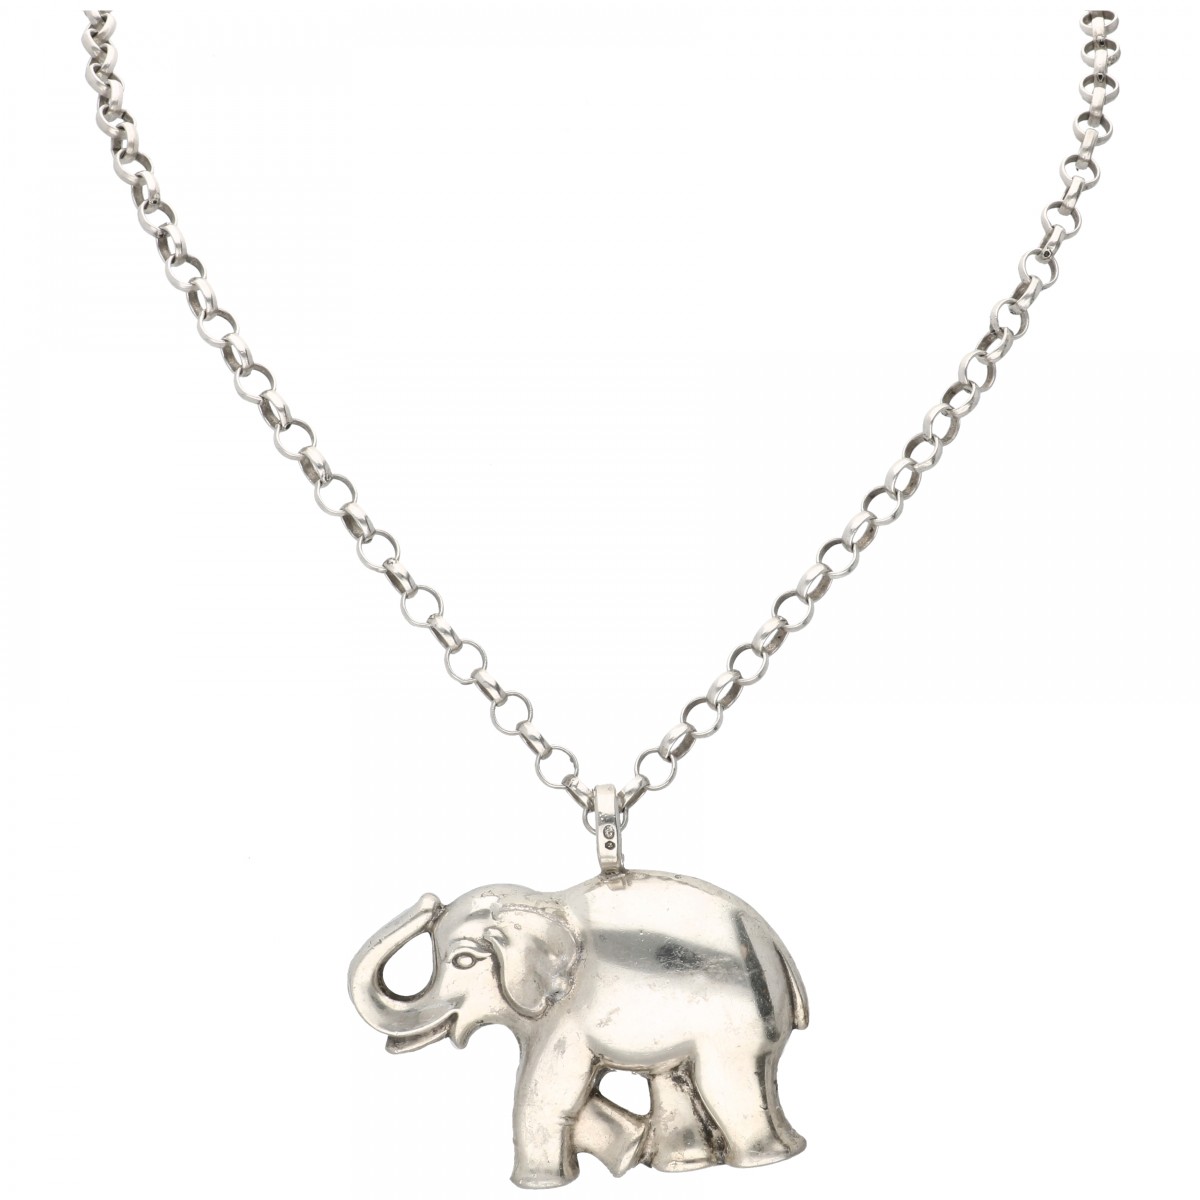 Zilveren collier met rammelaar in de vorm van een olifant - 830/1000.